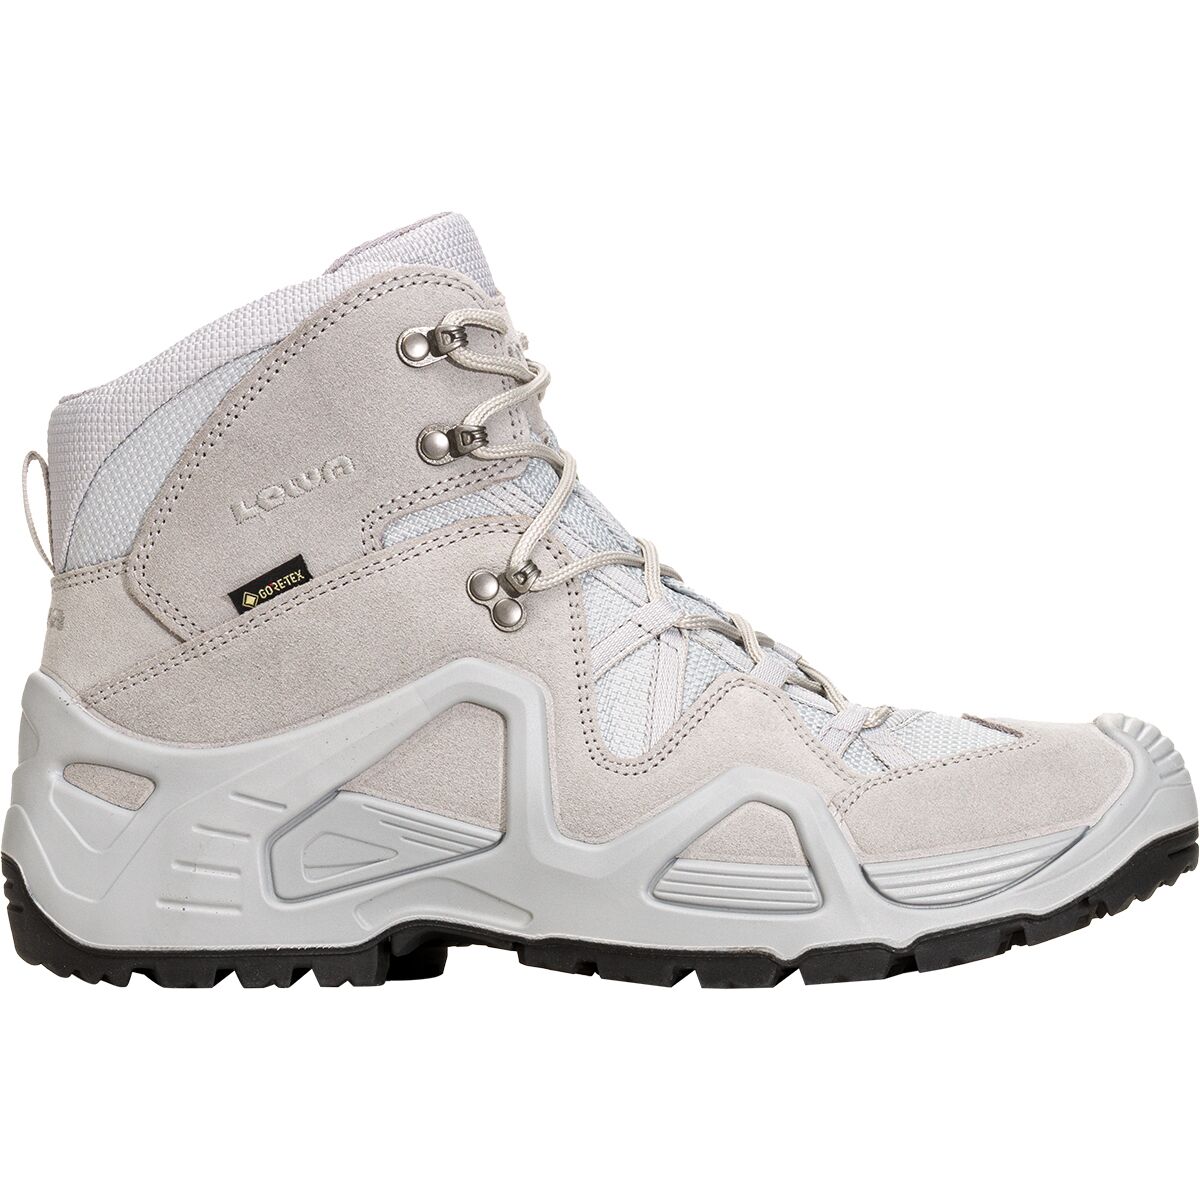 Silicium Zwerver welzijn Lowa Zephyr GTX Mid TF Hiking Boot - Women's - Footwear